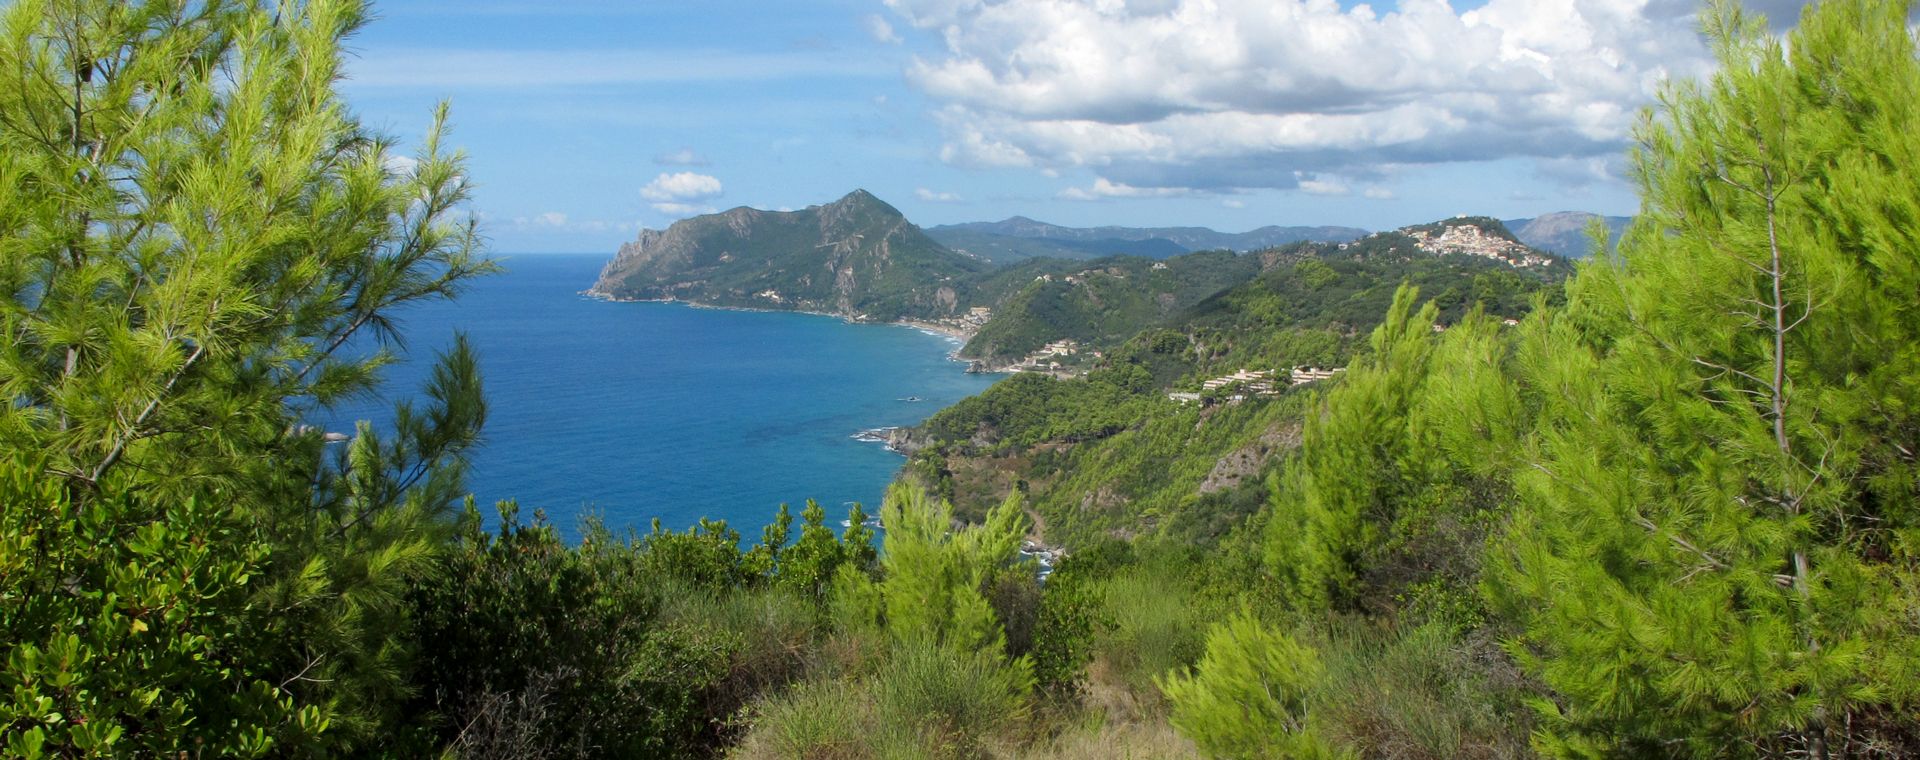 La côte Ouest de Corfou avec le mont Agios Georgios en arrière-plan